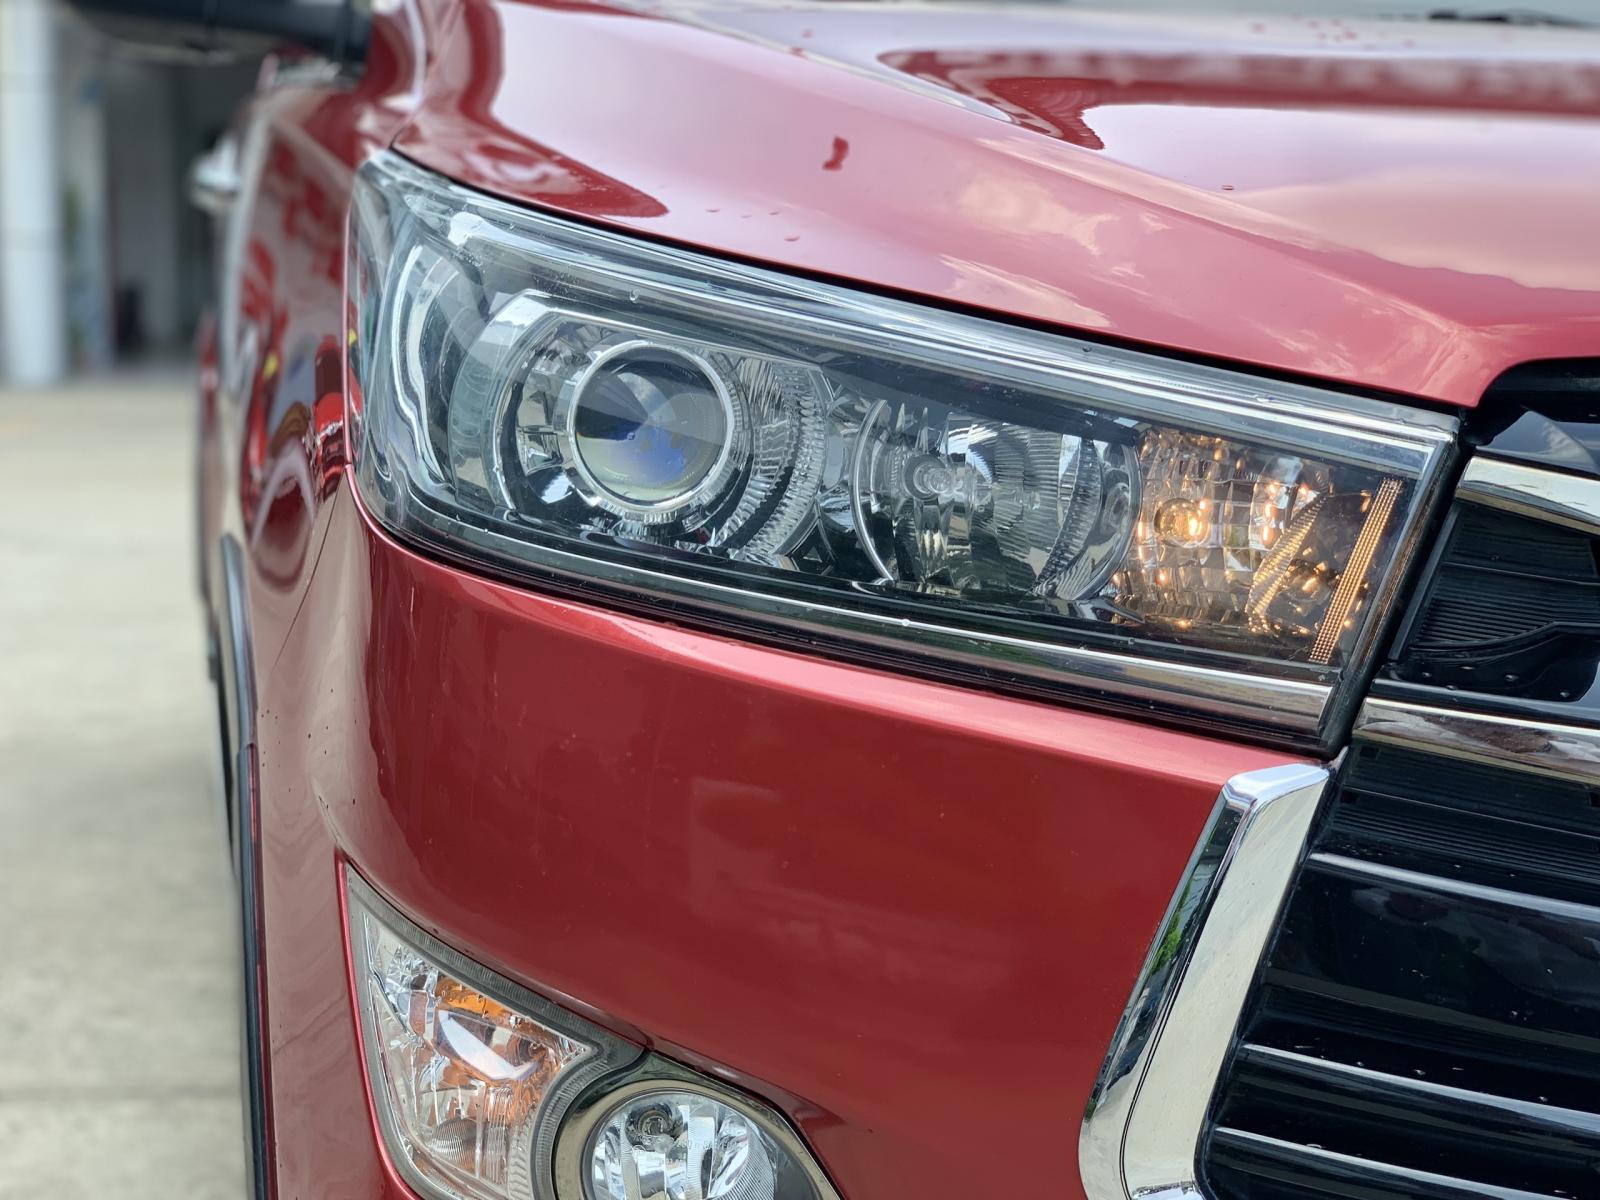 Toyota Innova 2018 - Bán ô tô Toyota Innova Venturer đời 2018, màu đỏ biển SG - 70.000km full option giá còn fix mạnh